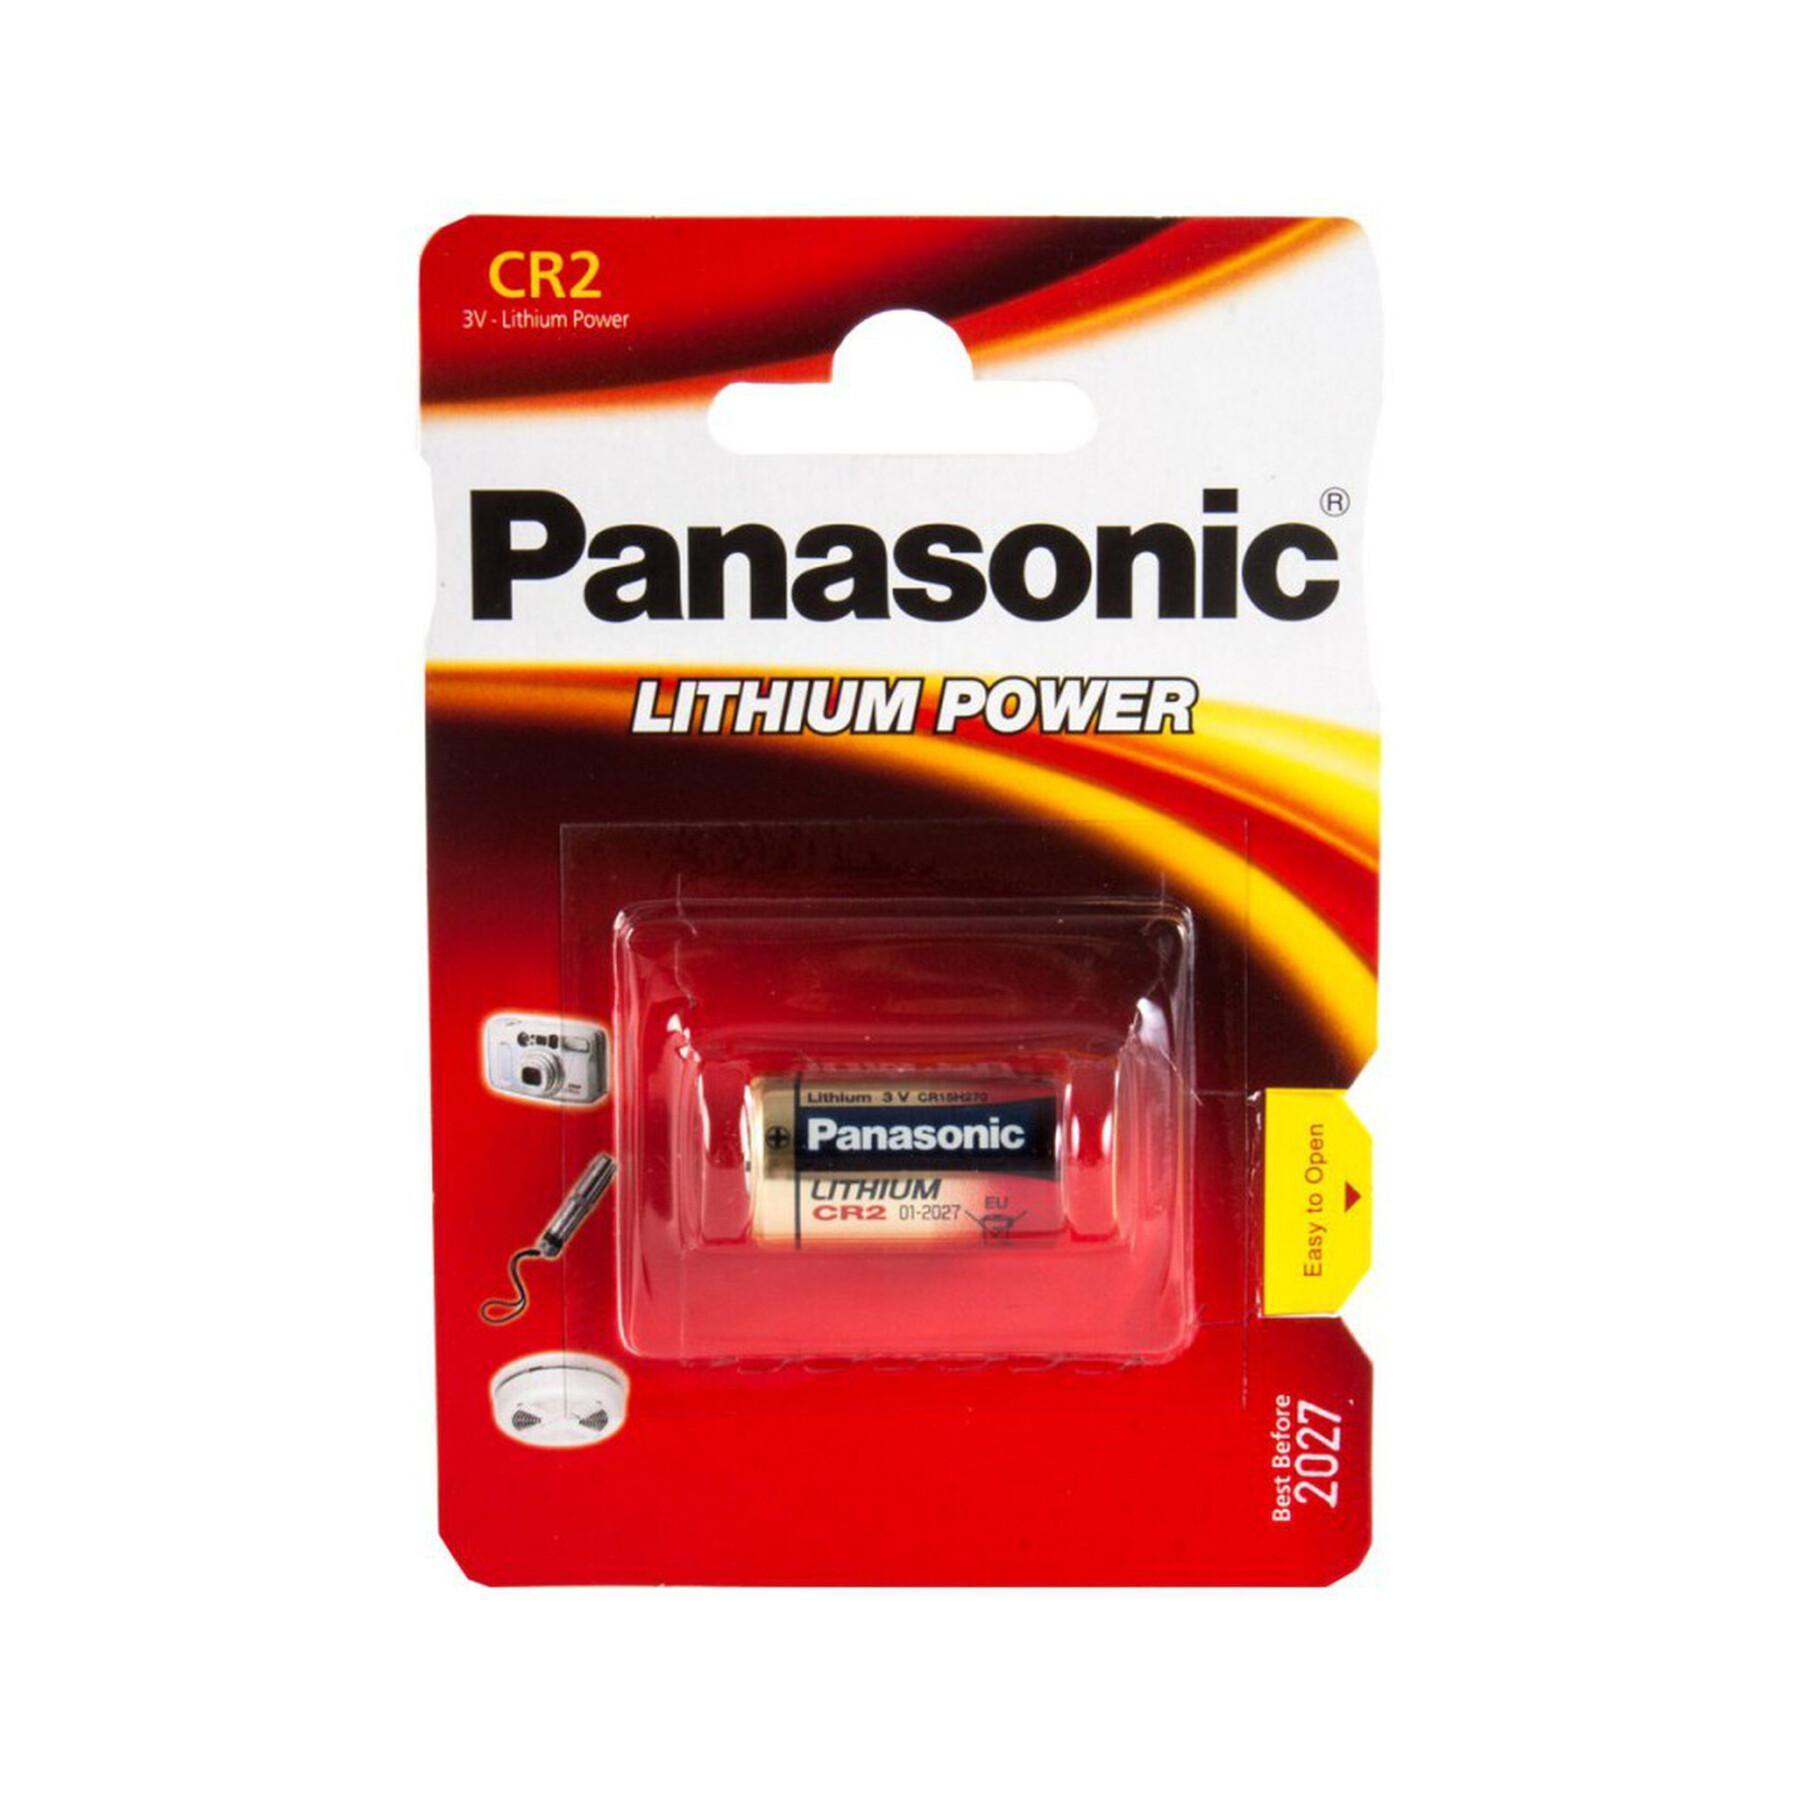 Panasonic batterij voor afstandsmeter